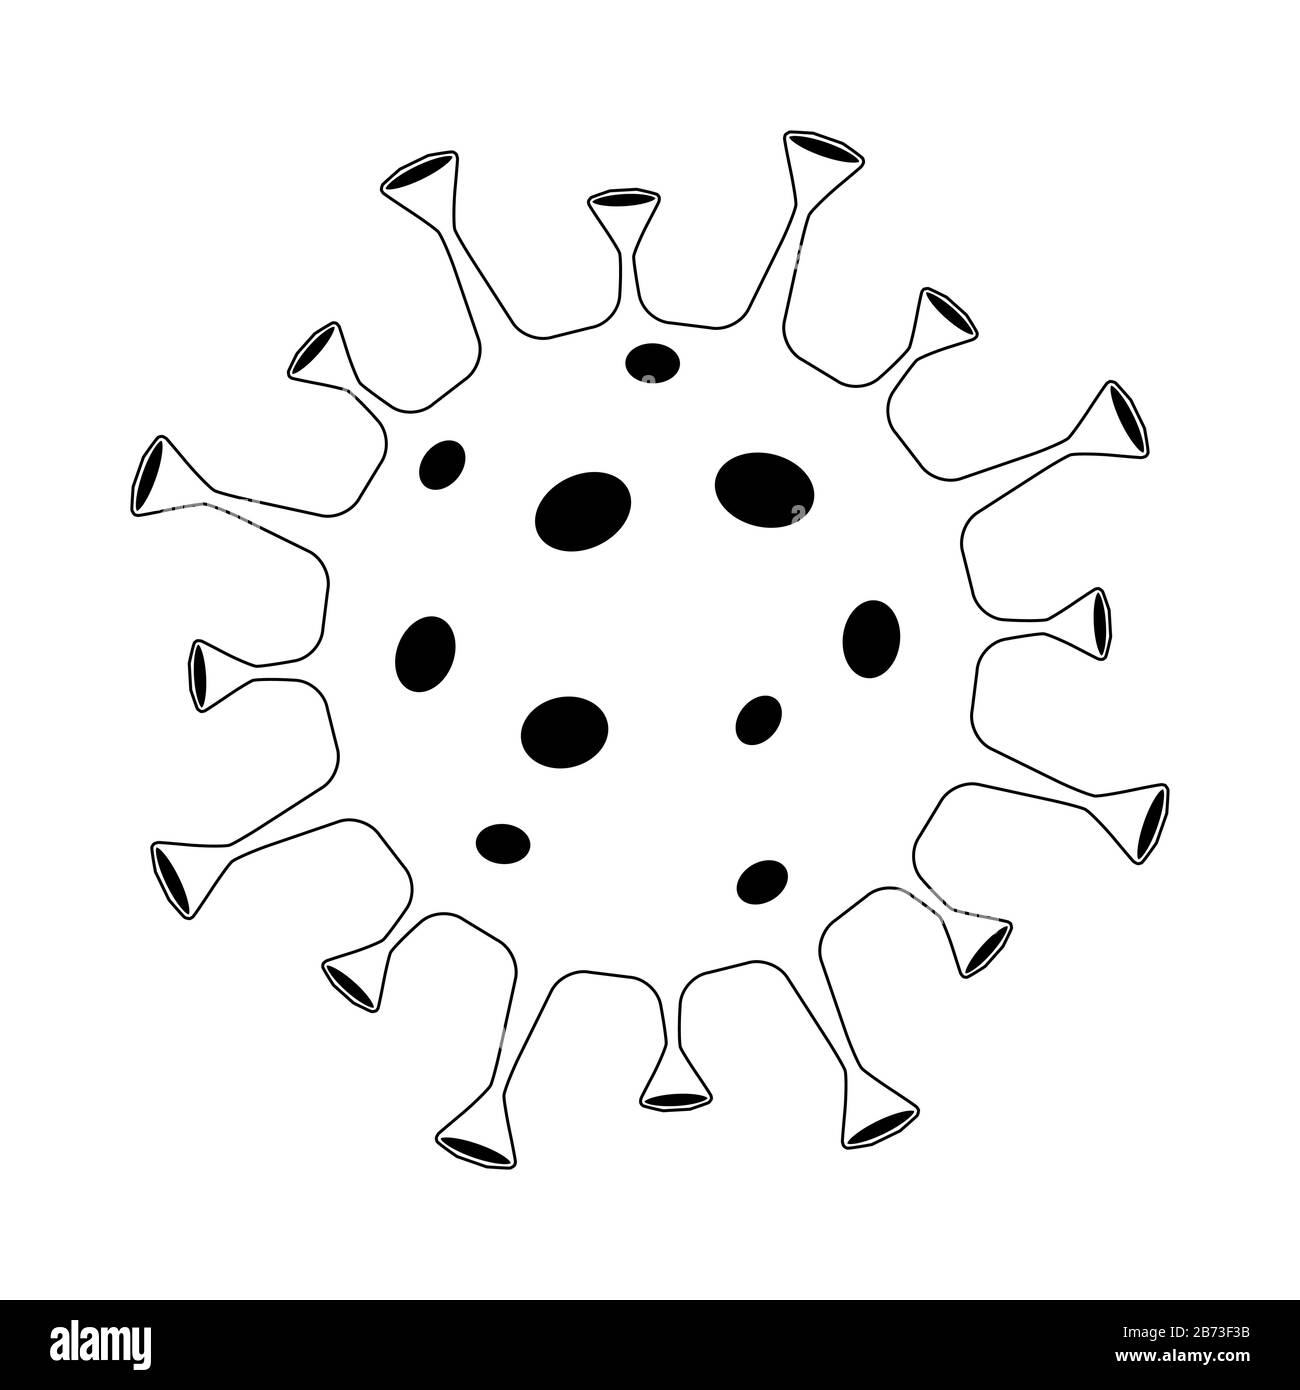 Diseño del contorno del virus de la corona sobre fondo blanco. Coronavirus en símbolo de icono Wuhan aislado. China patógeno infección respiratoria (brote de gripe asiática). Ilustración del Vector